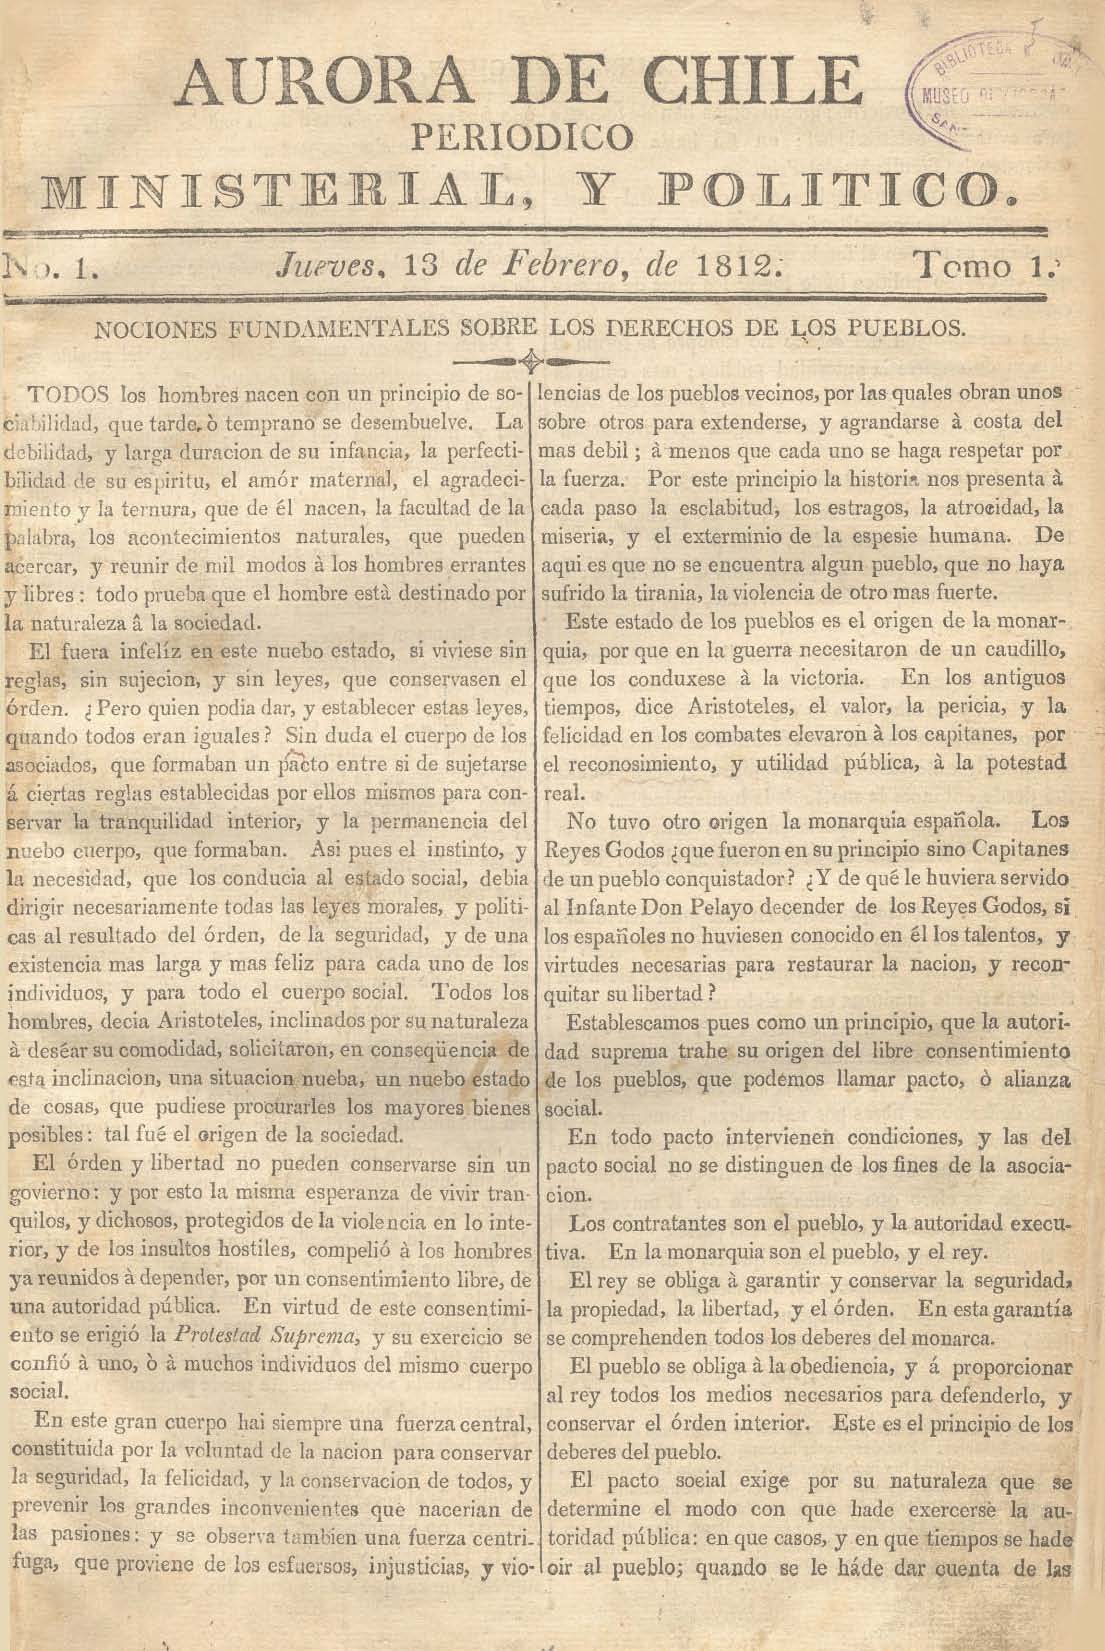 												Ver Núm. 10 (1813): Tomo II. Jueves 18 de Marzo
											